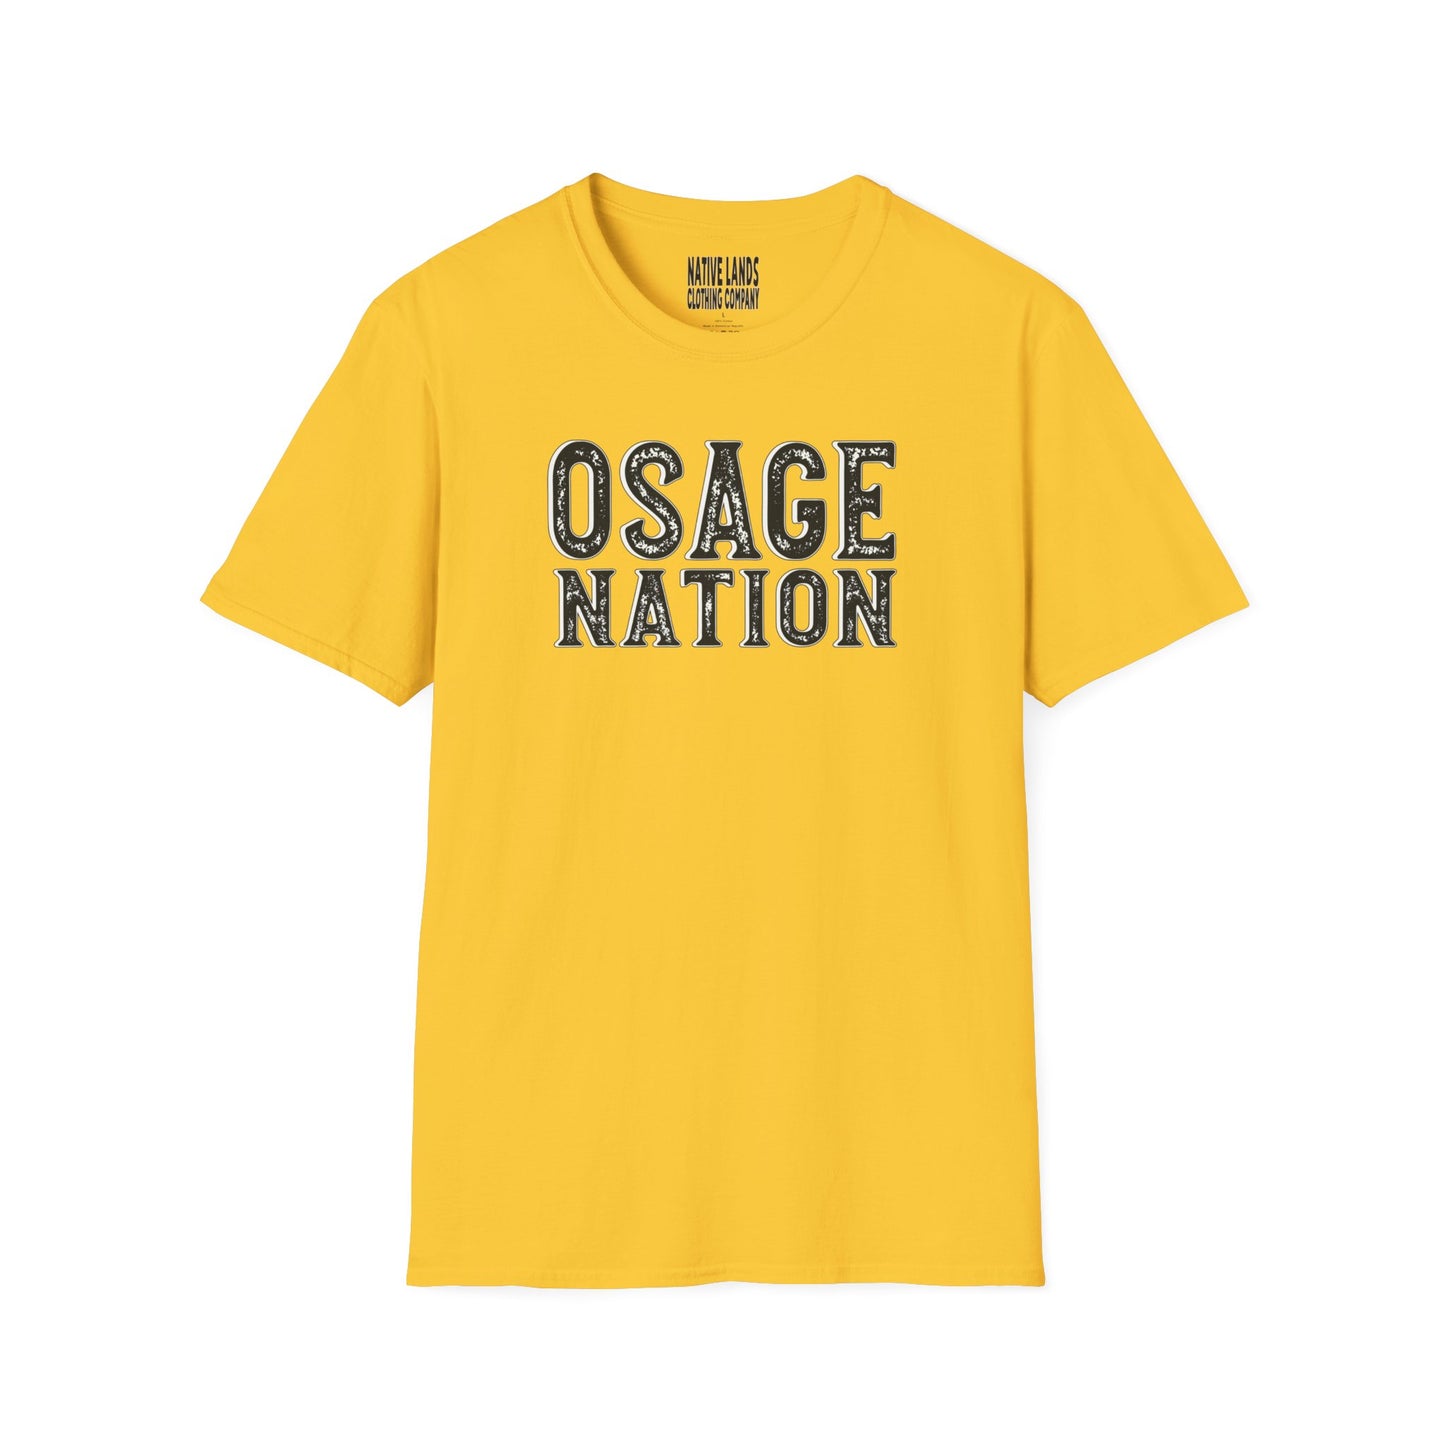 Рубашка Osage Nation из хлопка коренных американцев